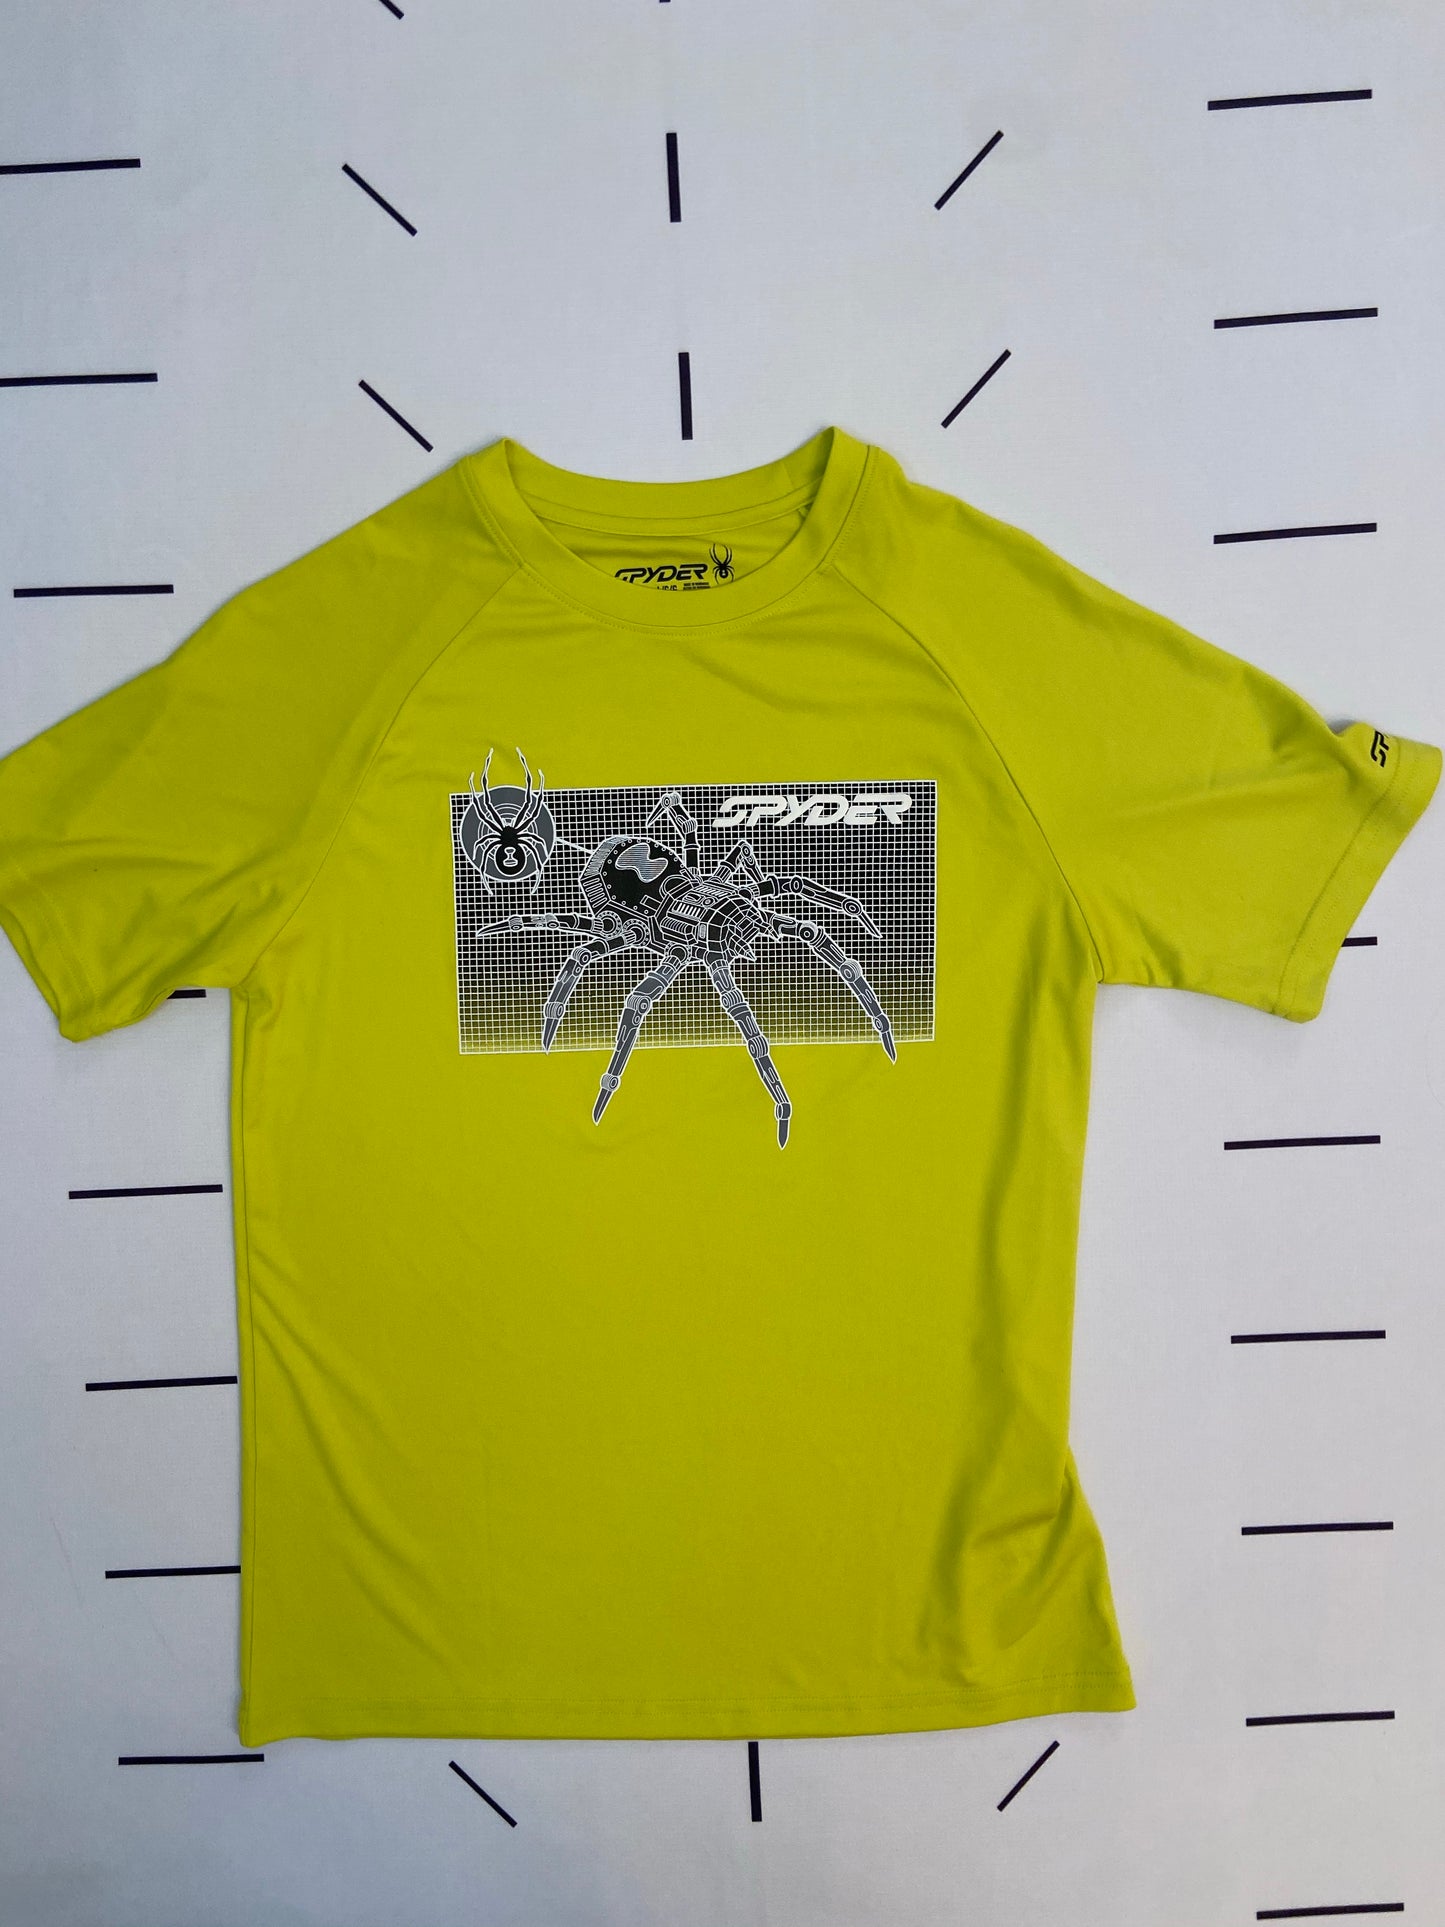 Highlighter Robot Spyder T-shirt- Youth L